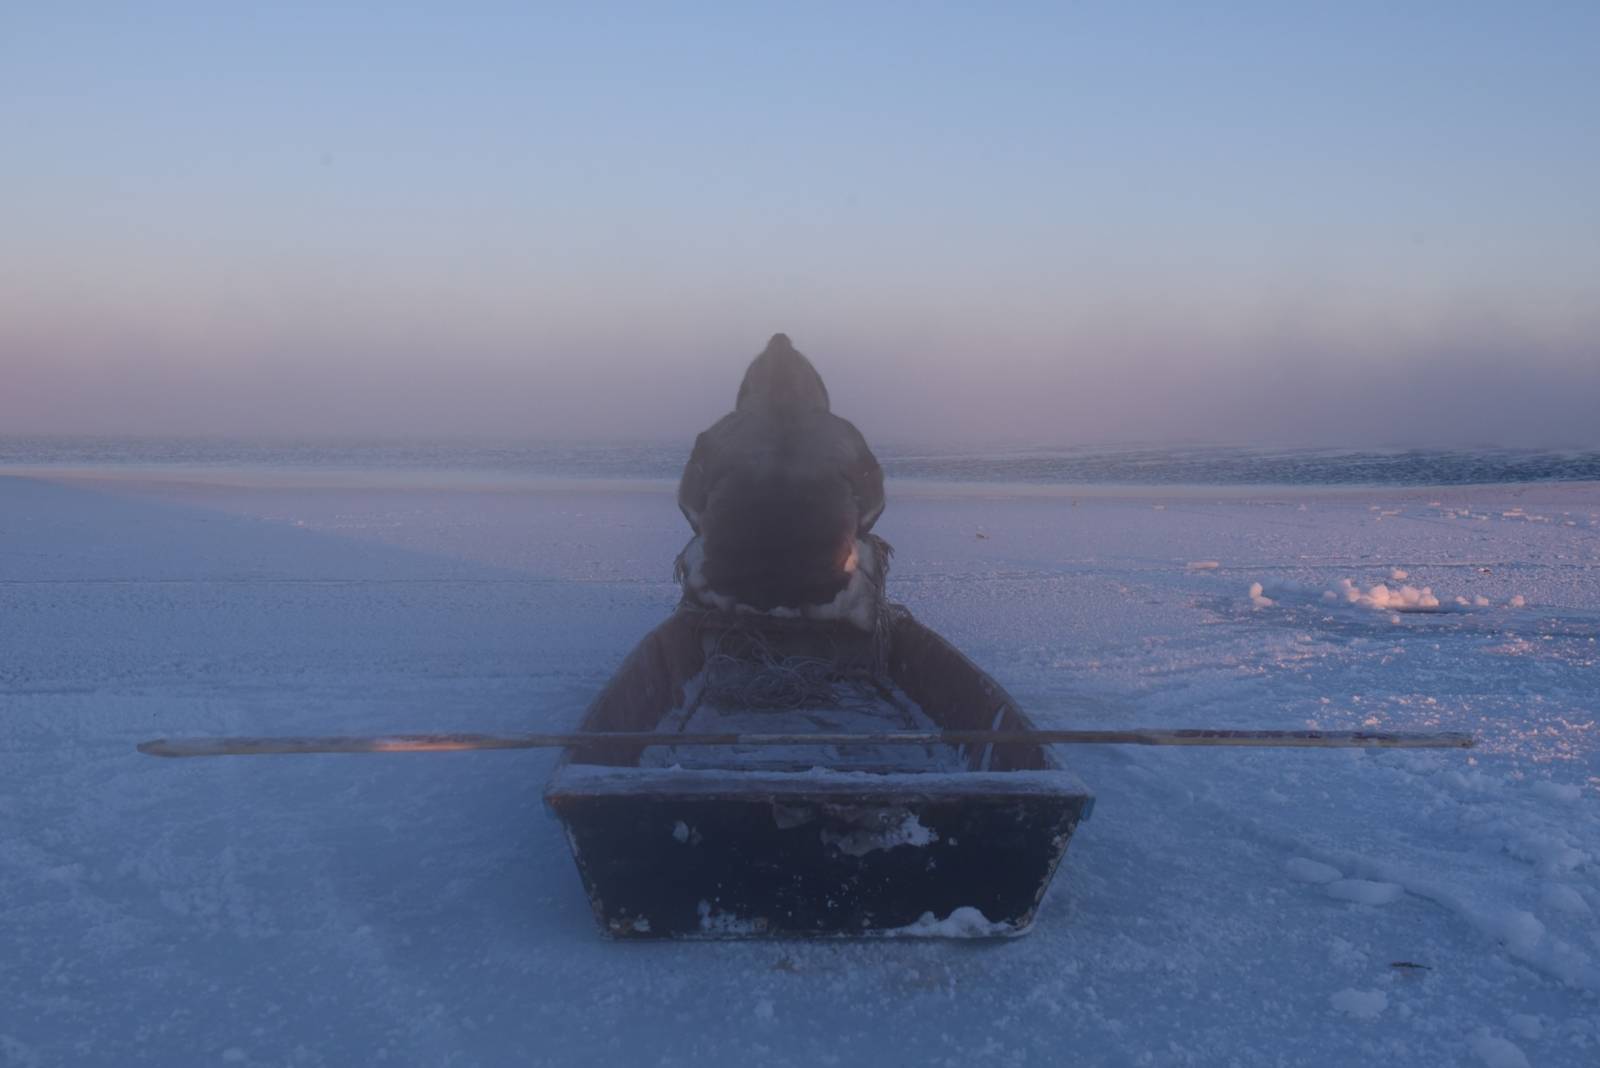 Zu sehen ist eine Fotografie einer Eislandschaft bei Sonnenuntergang. Auf einem Boot sitzt eine Person in dicker Winterkleidung mit dem Rücken zum Betrachter.